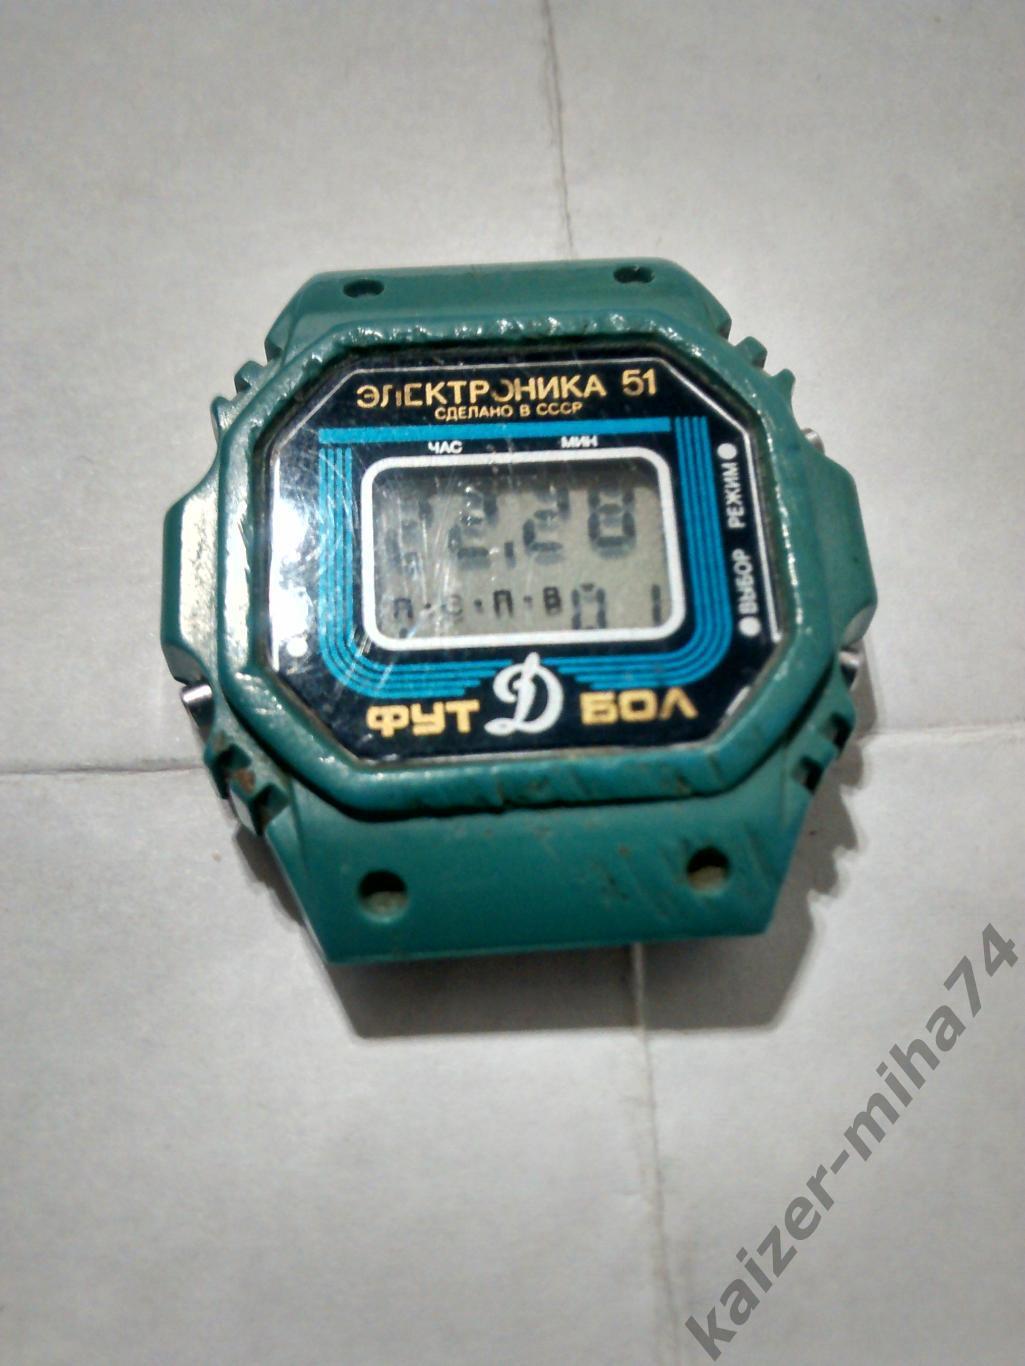 часы электроника 51.сделано в СССР.с символикой Динамо/футбол.